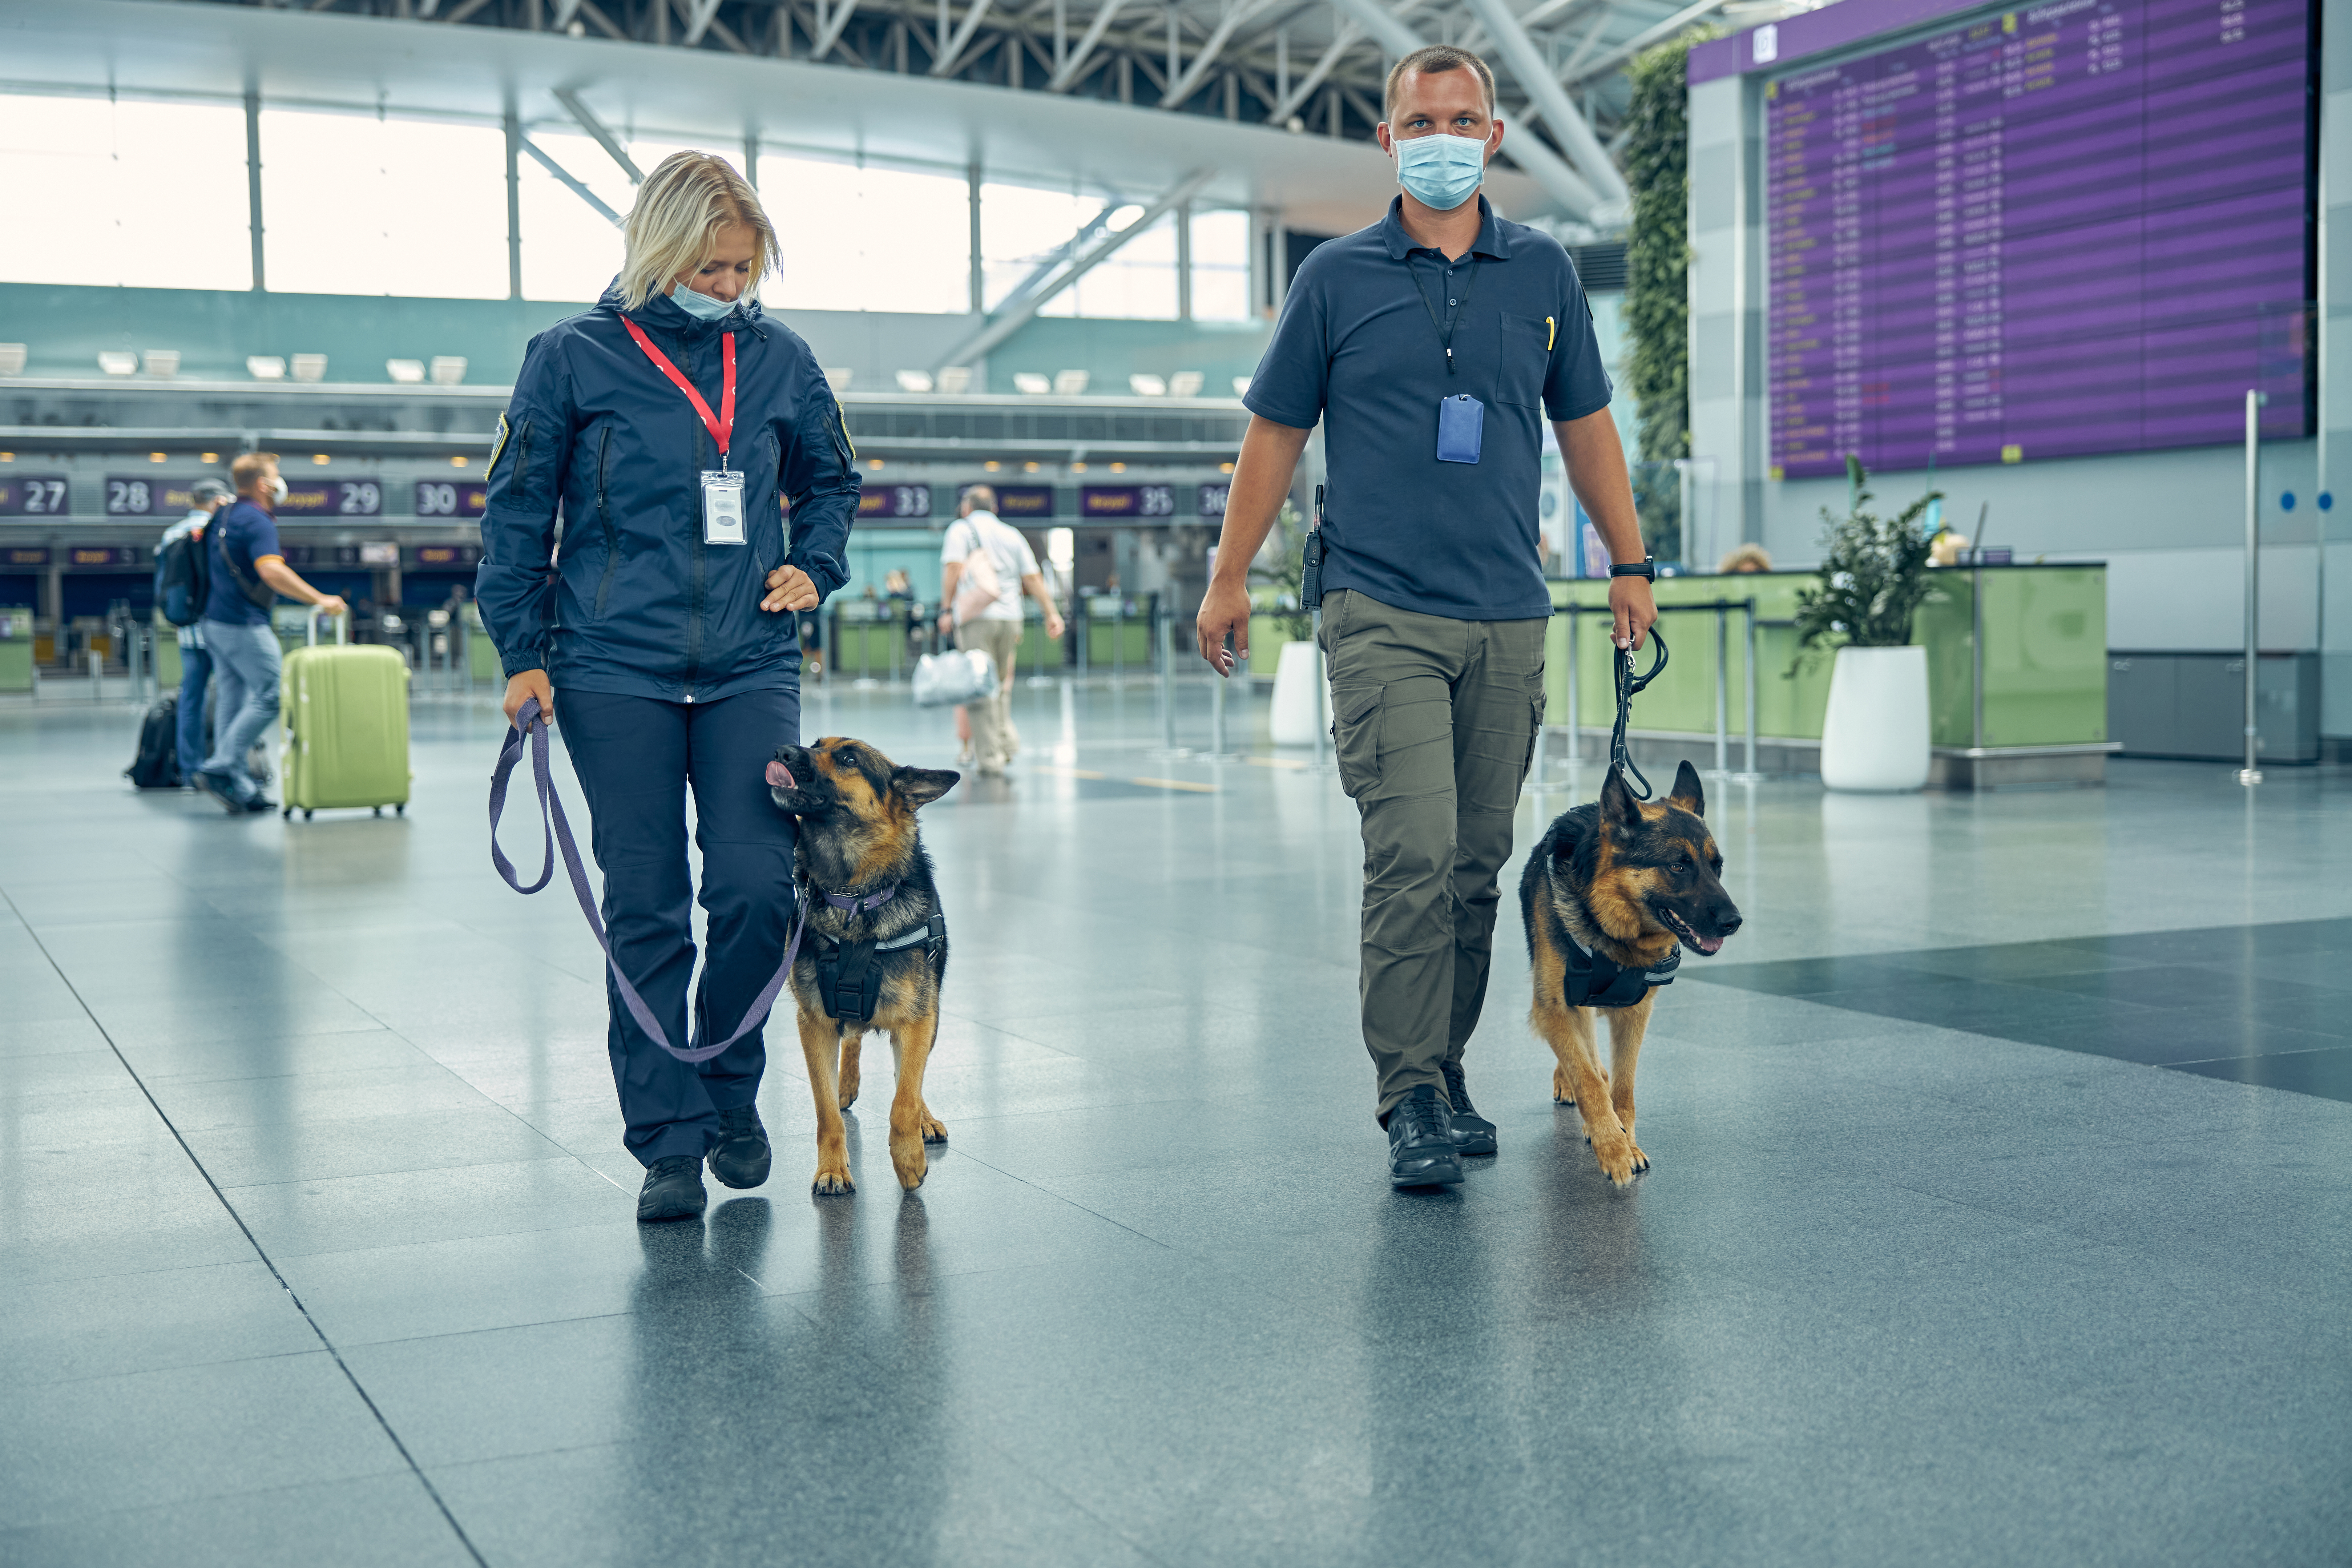 Emiratele Arabe Unite folosesc câini în aeroporturi ca metodă rapidă de detectare a Covid-19